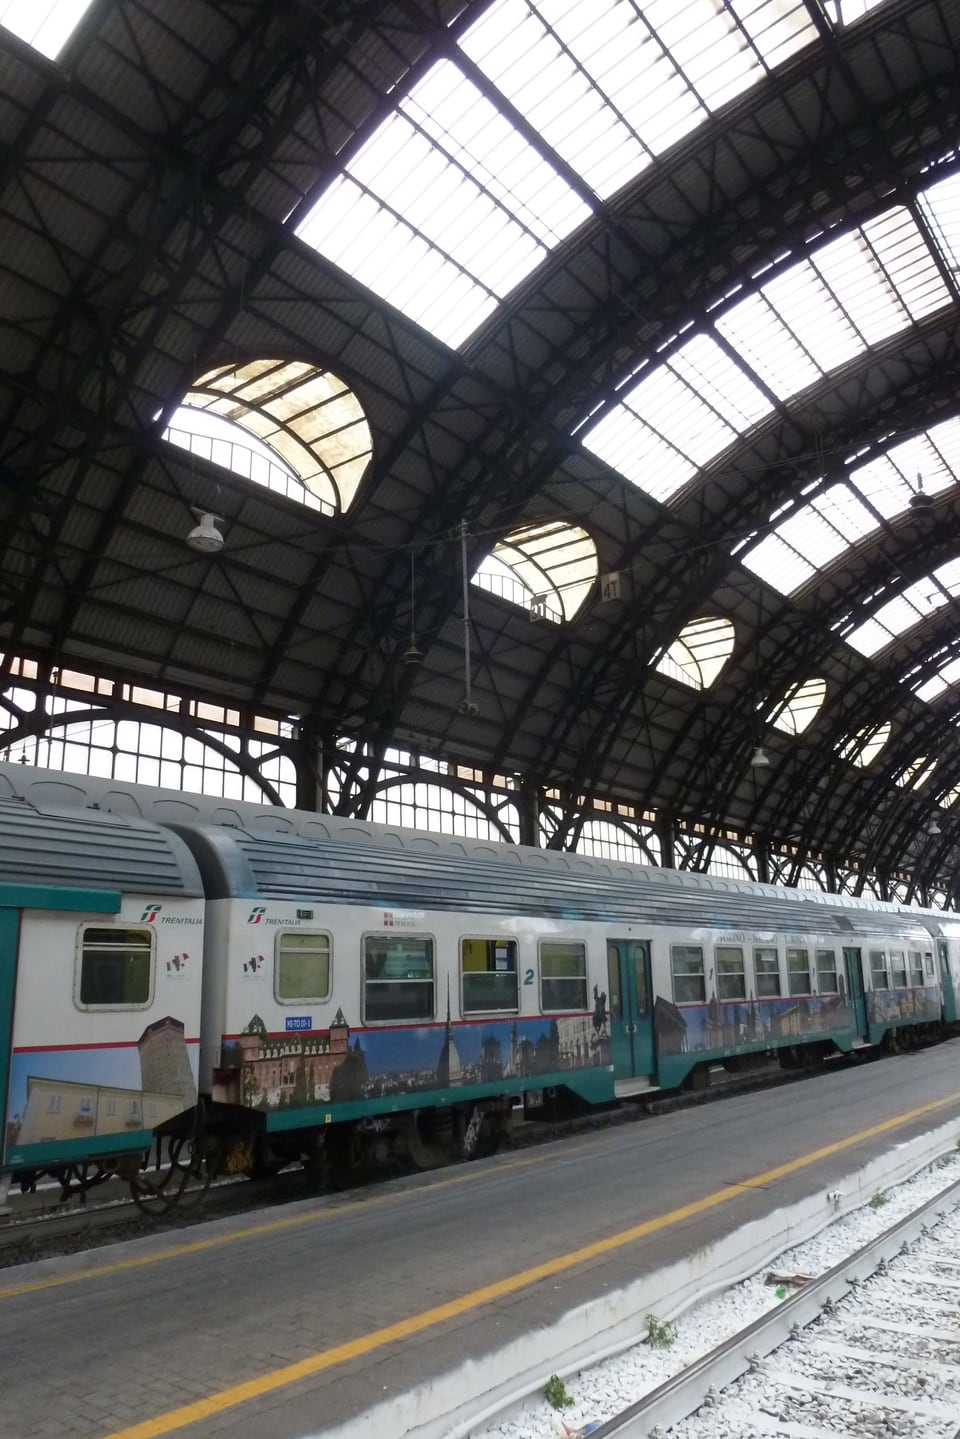 Ein Zug mit Bildern von Sehenswürdigkeiten steht im Bahnhof Mailand.